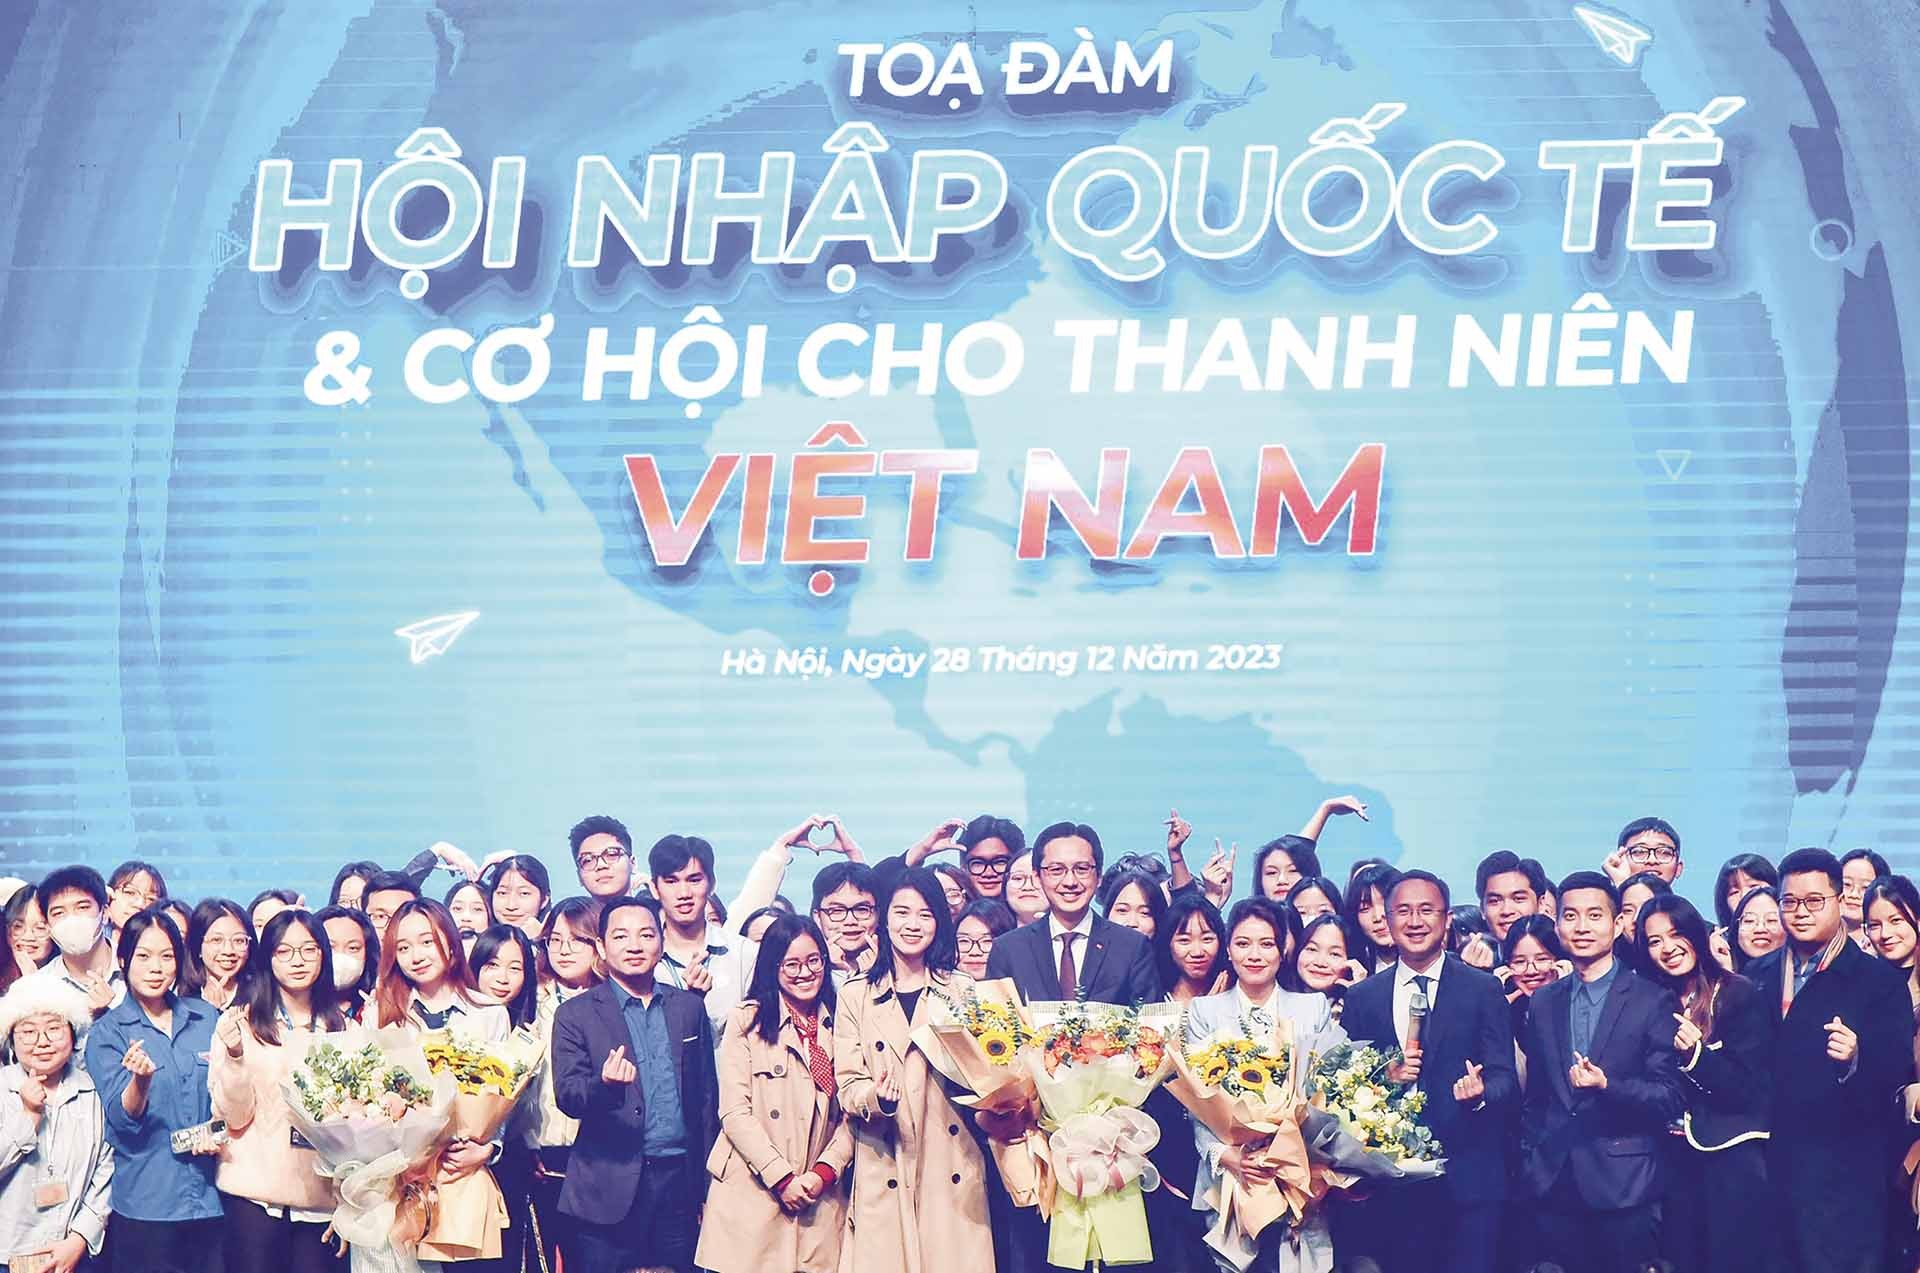 Thứ trưởng Ngoại giao Đỗ Hùng Việt dự tọa đàm Hội nhập quốc tế và cơ hội cho thanh niên Việt Nam, ngày 28/12/2023. (Ảnh: Nguyễn Hồng)